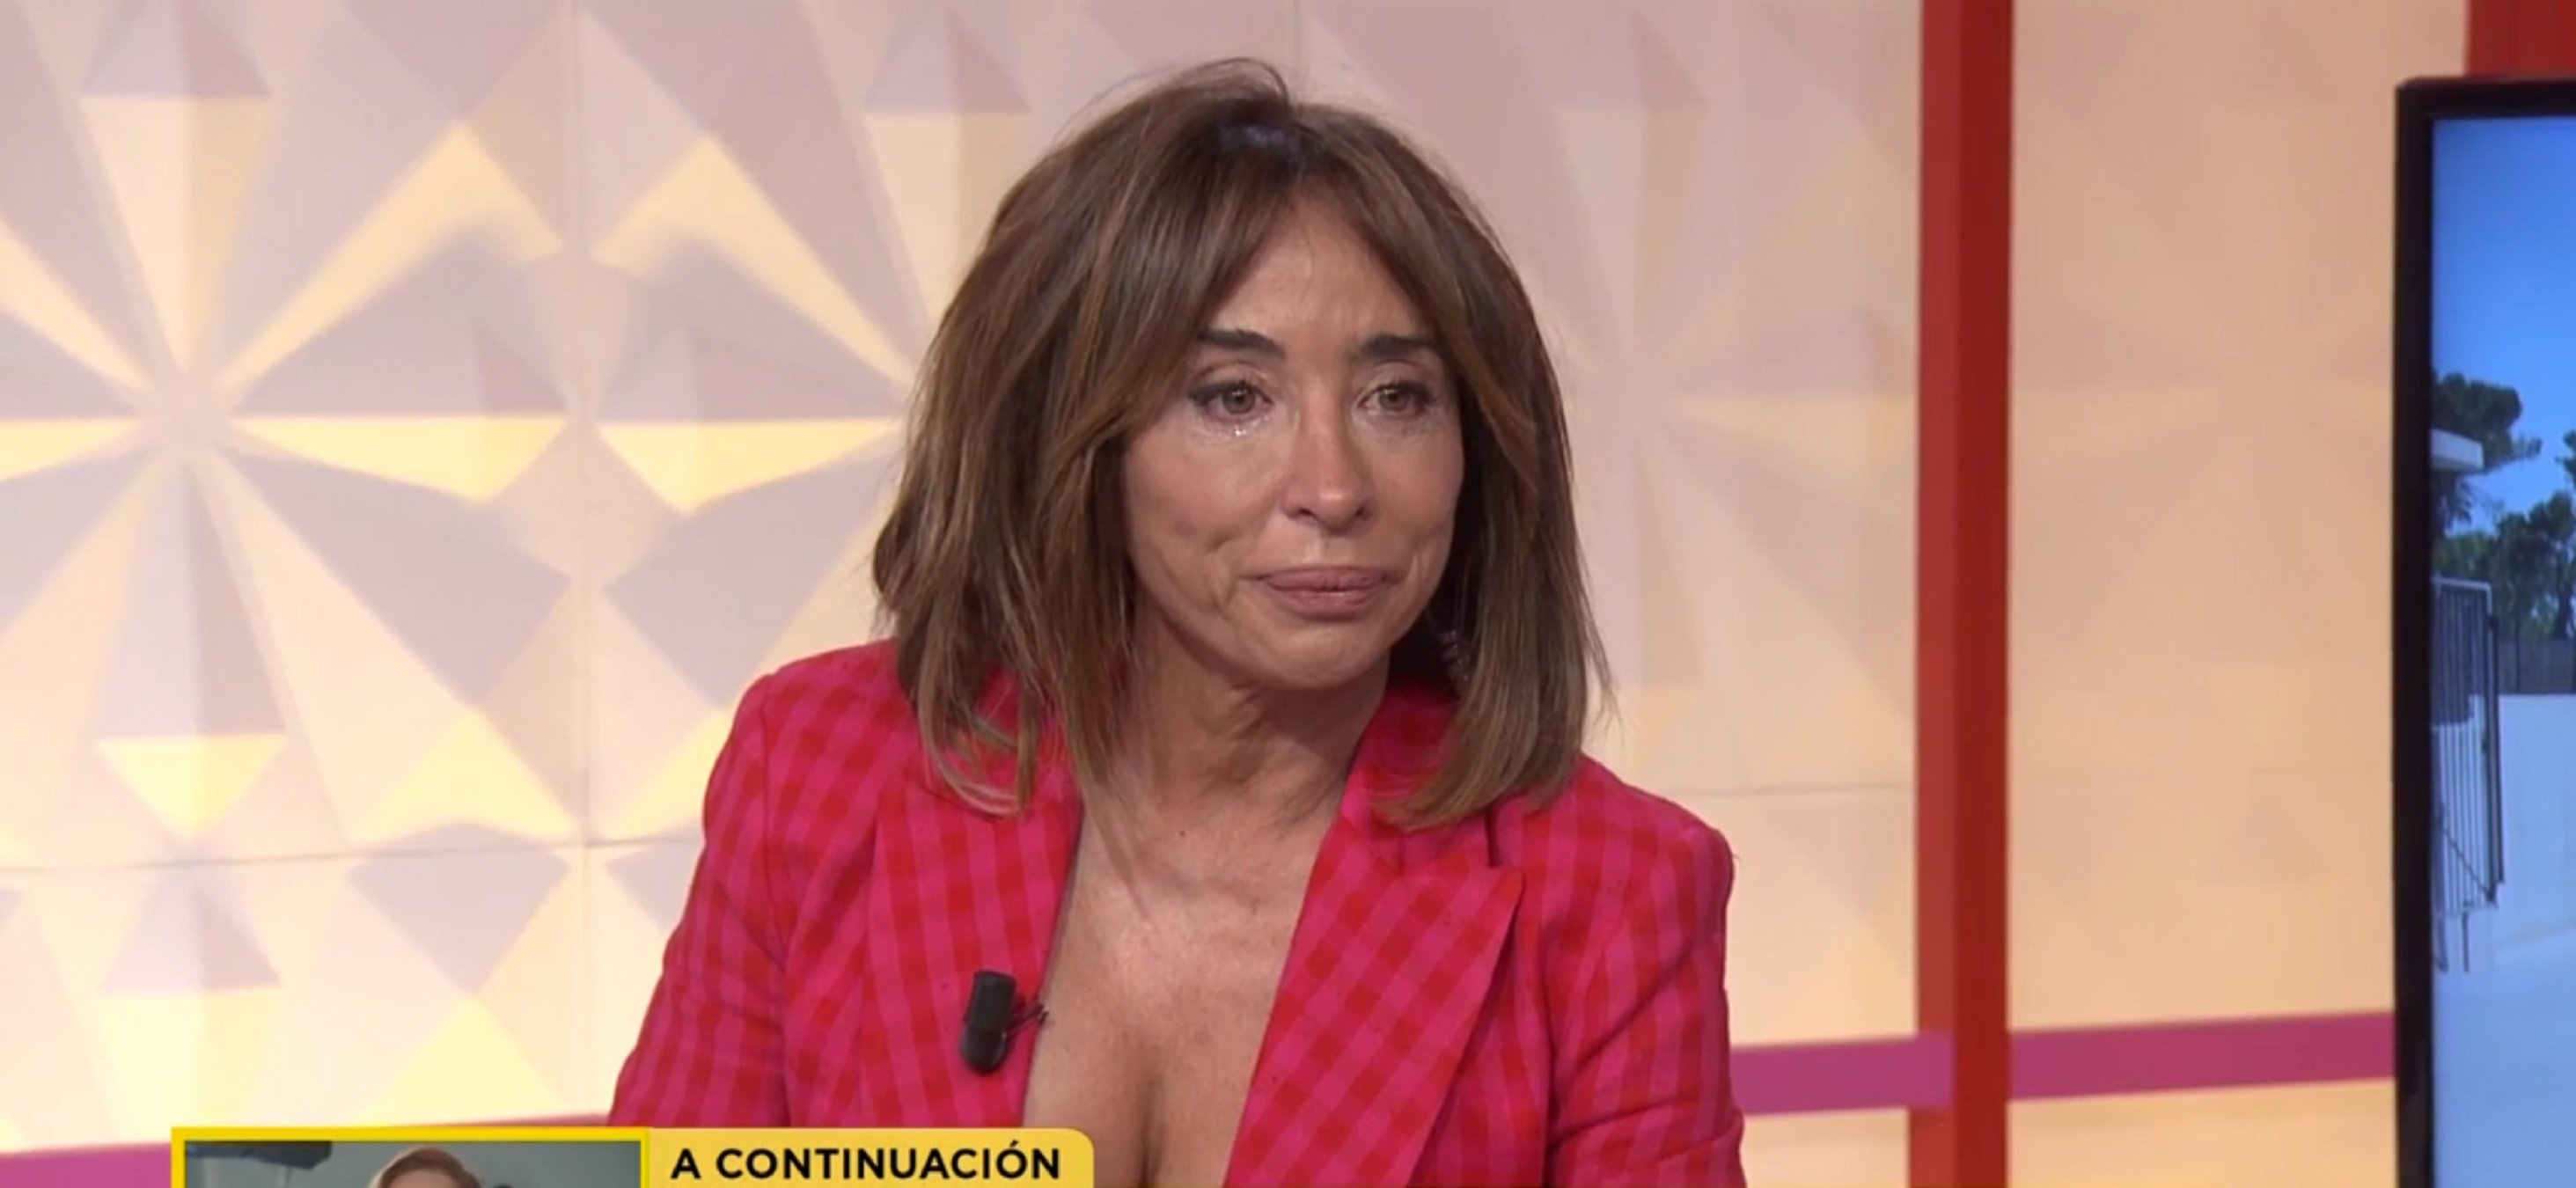 María Patiño llora desconsolada mostrando el vídeo nunca visto de Rocío Carrasco